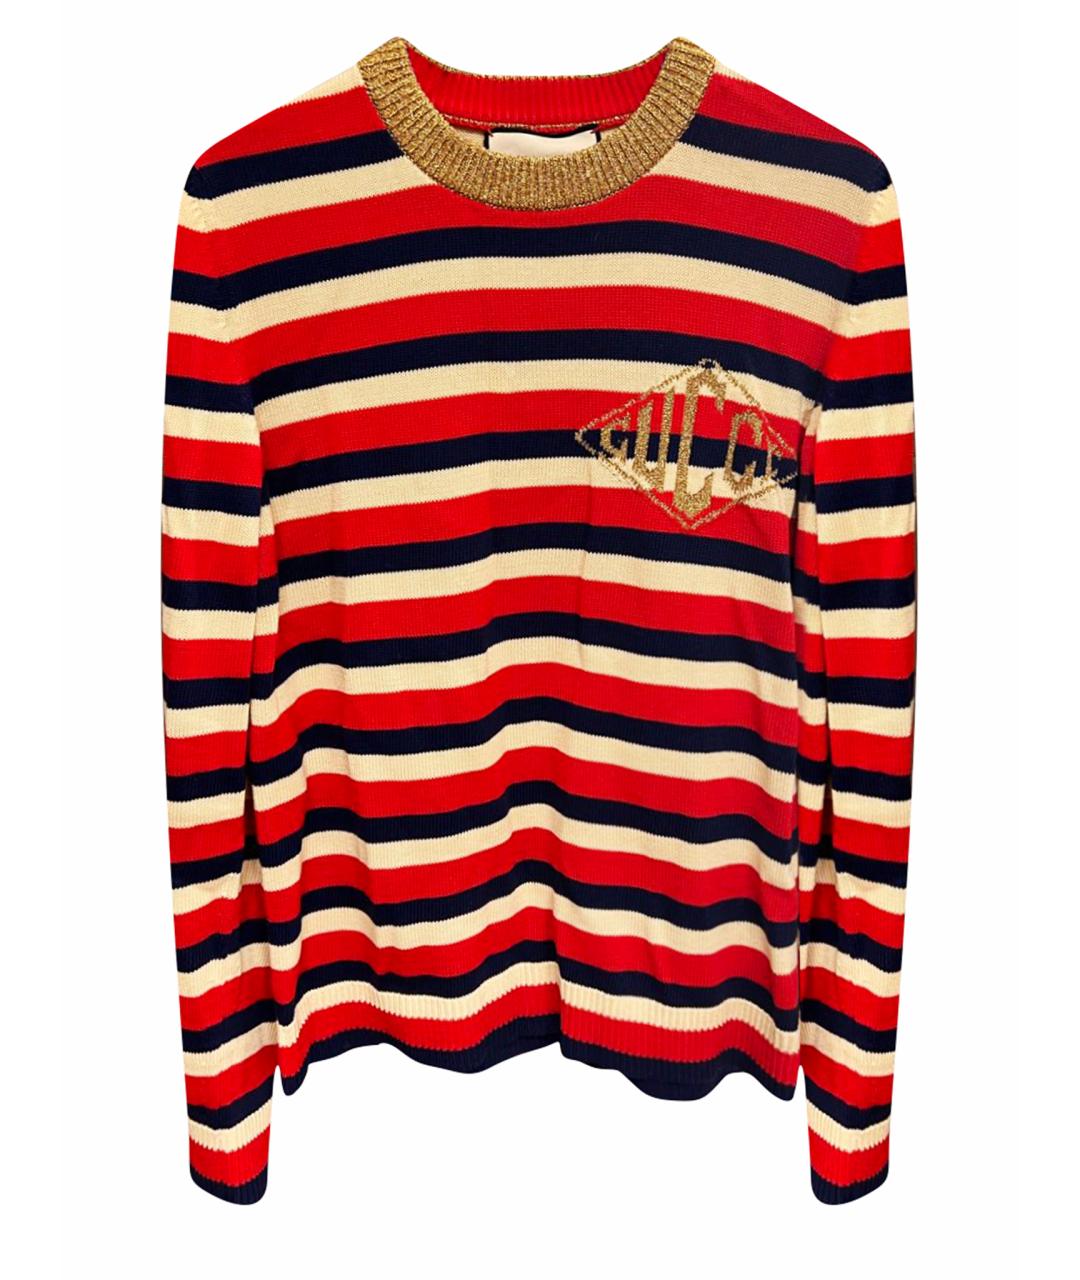 GUCCI Красный хлопковый джемпер / свитер, фото 1